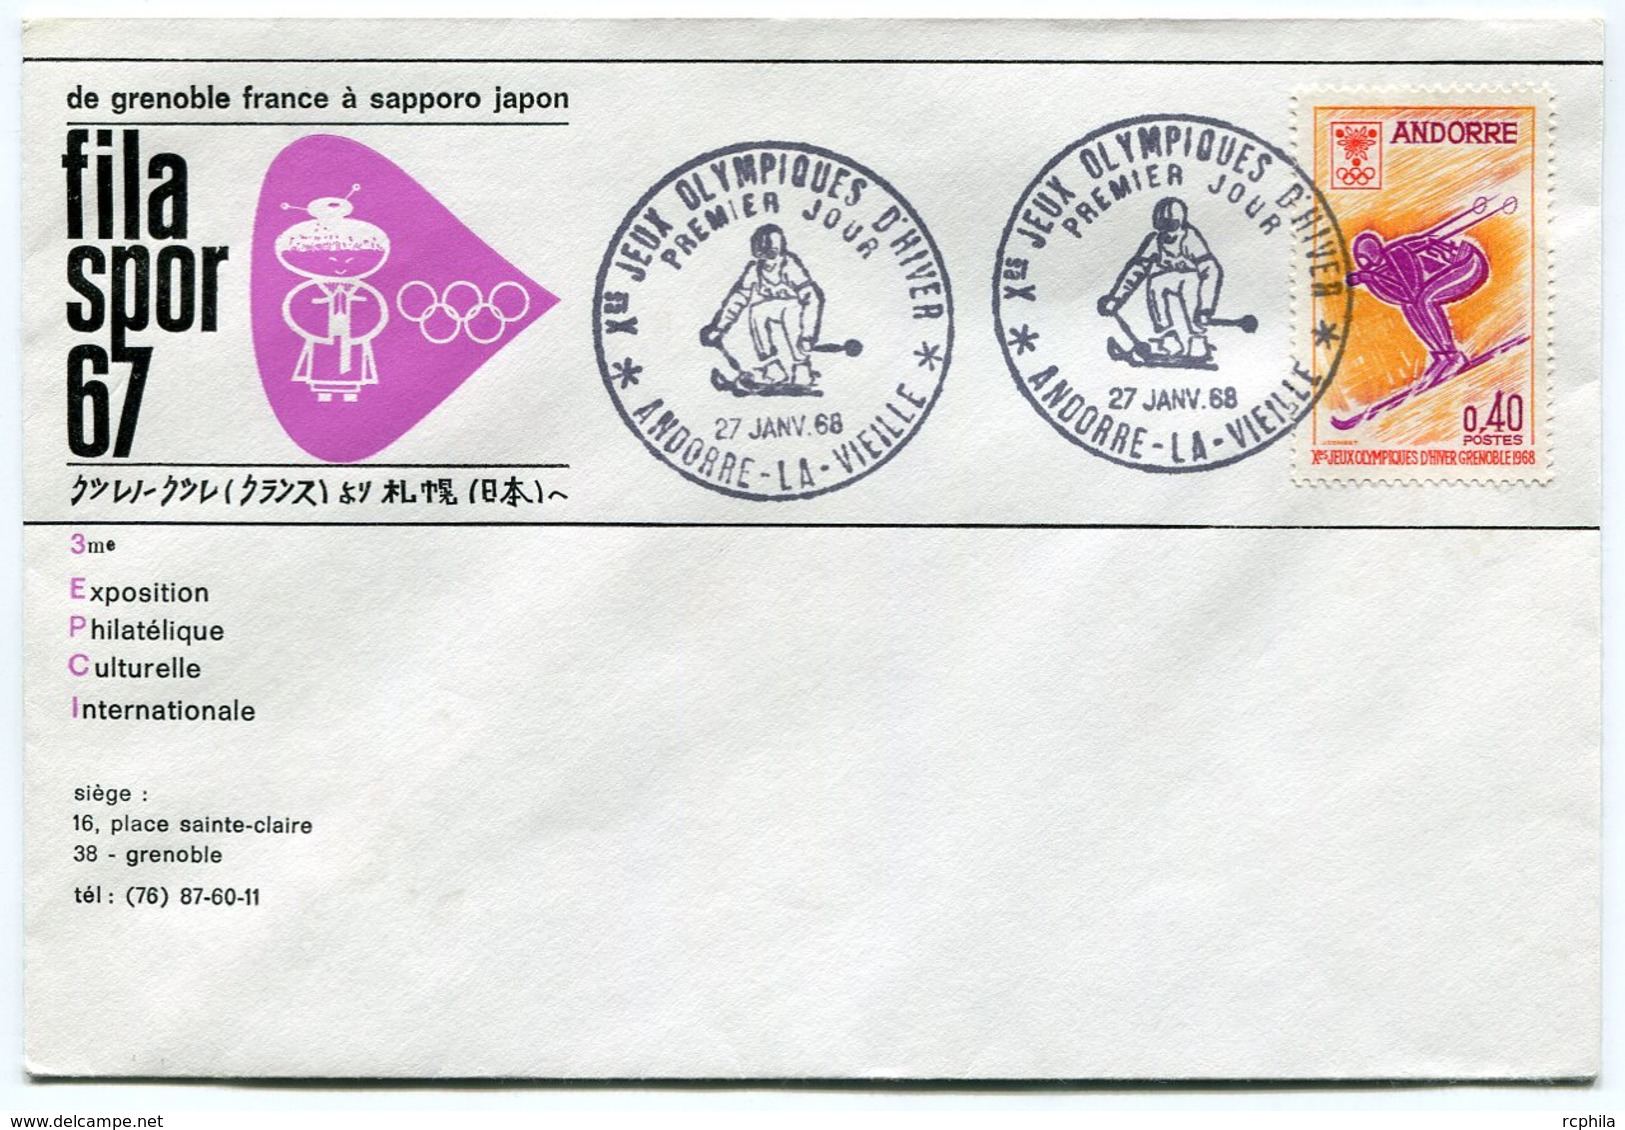 RC 10478 ANDORRE JEUX OLYMPIQUES DE GRENOBLE 1968 SKI ENVELOPPE FRANCE JAPON 1er JOUR FDC TB - Lettres & Documents